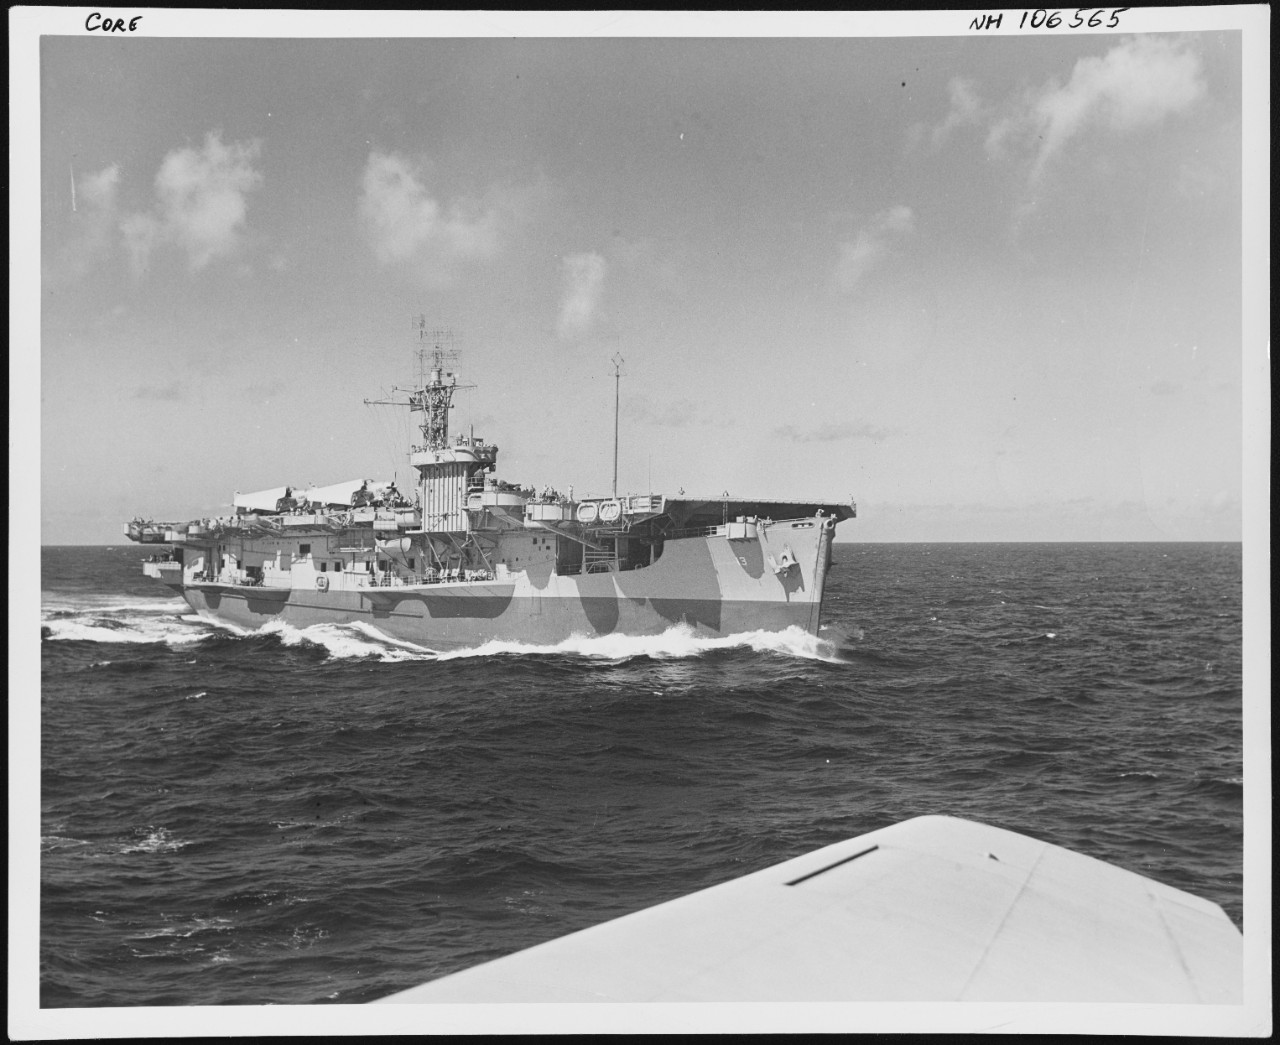 Photo # NH 106565  USS Core